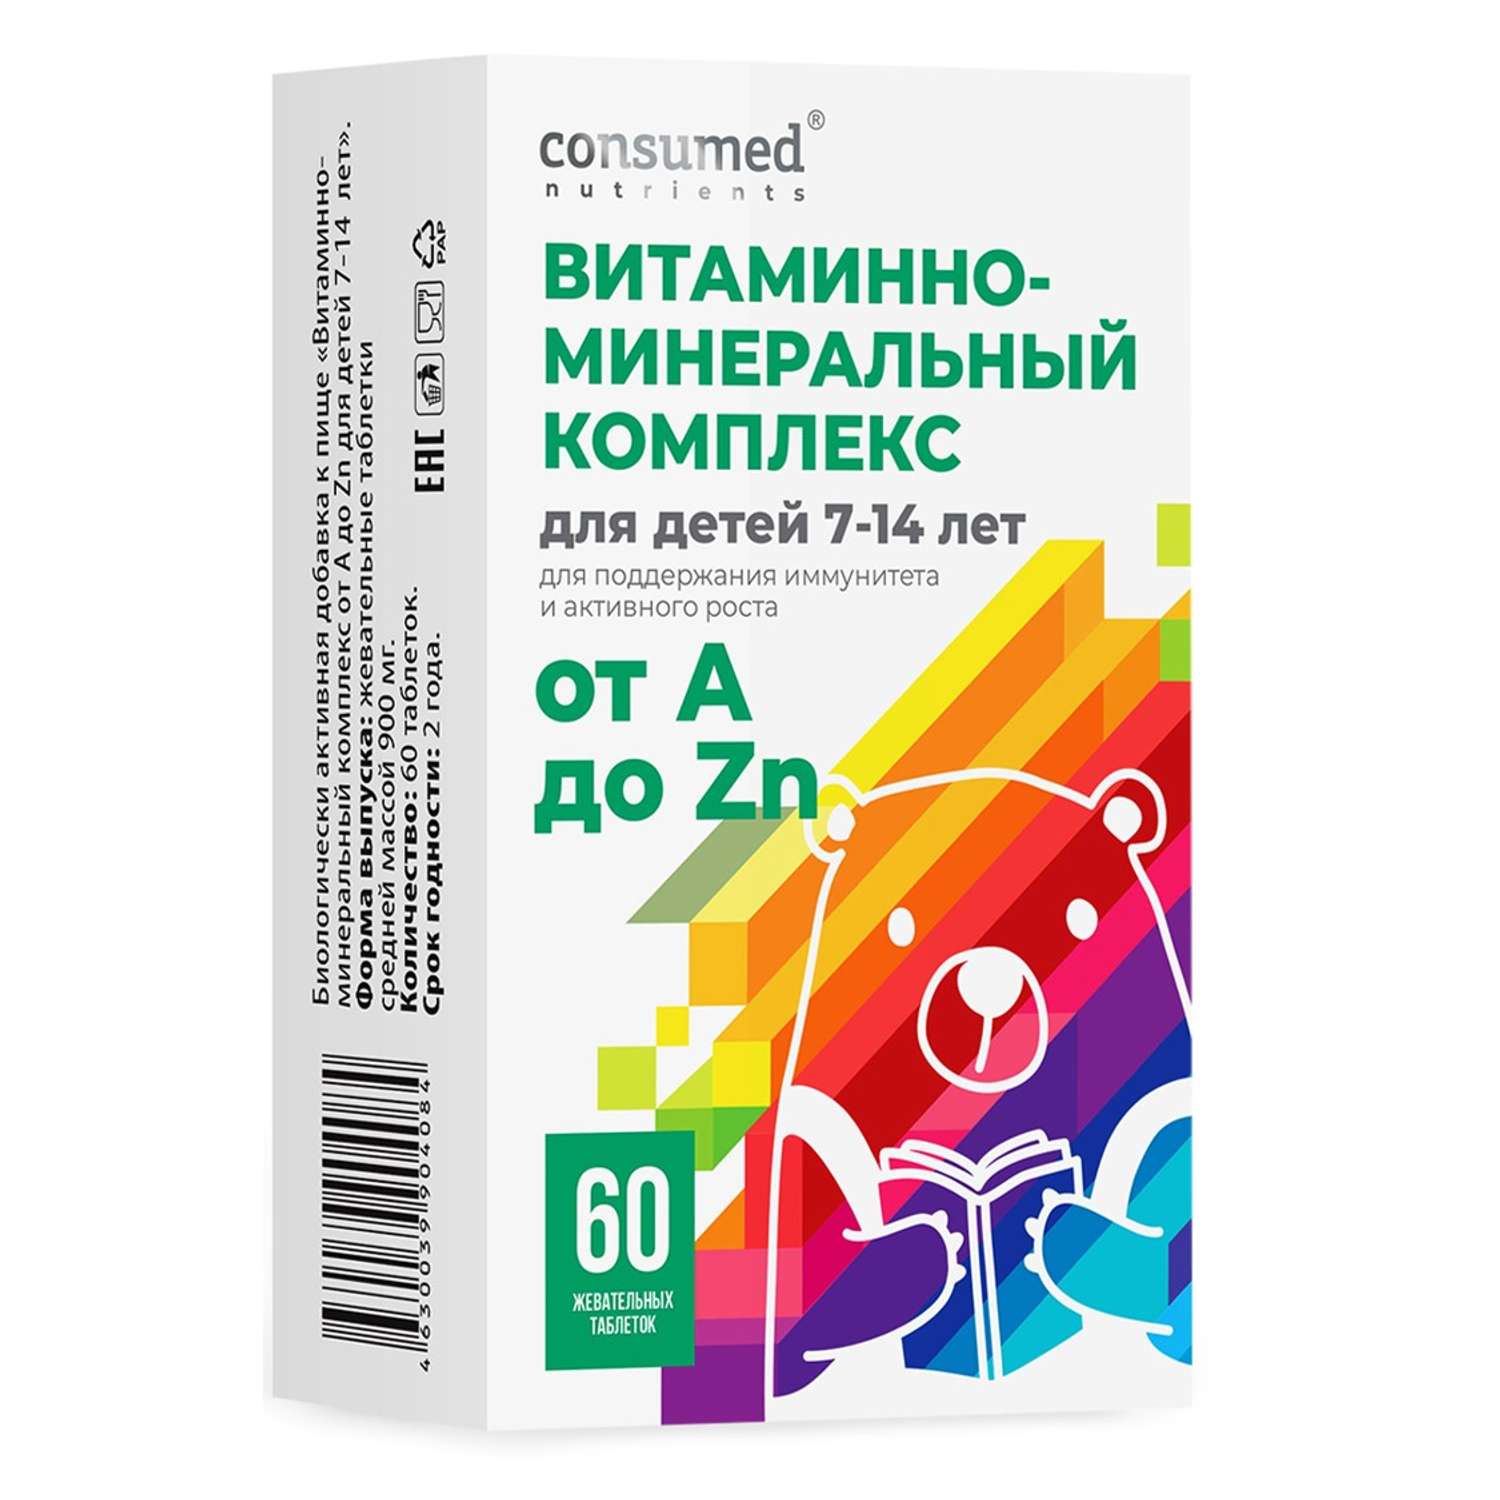 Витаминно-минеральный комплекс Consumed от А до Zn для детей 7-14 лет таблетки жевательные №60 - фото 1